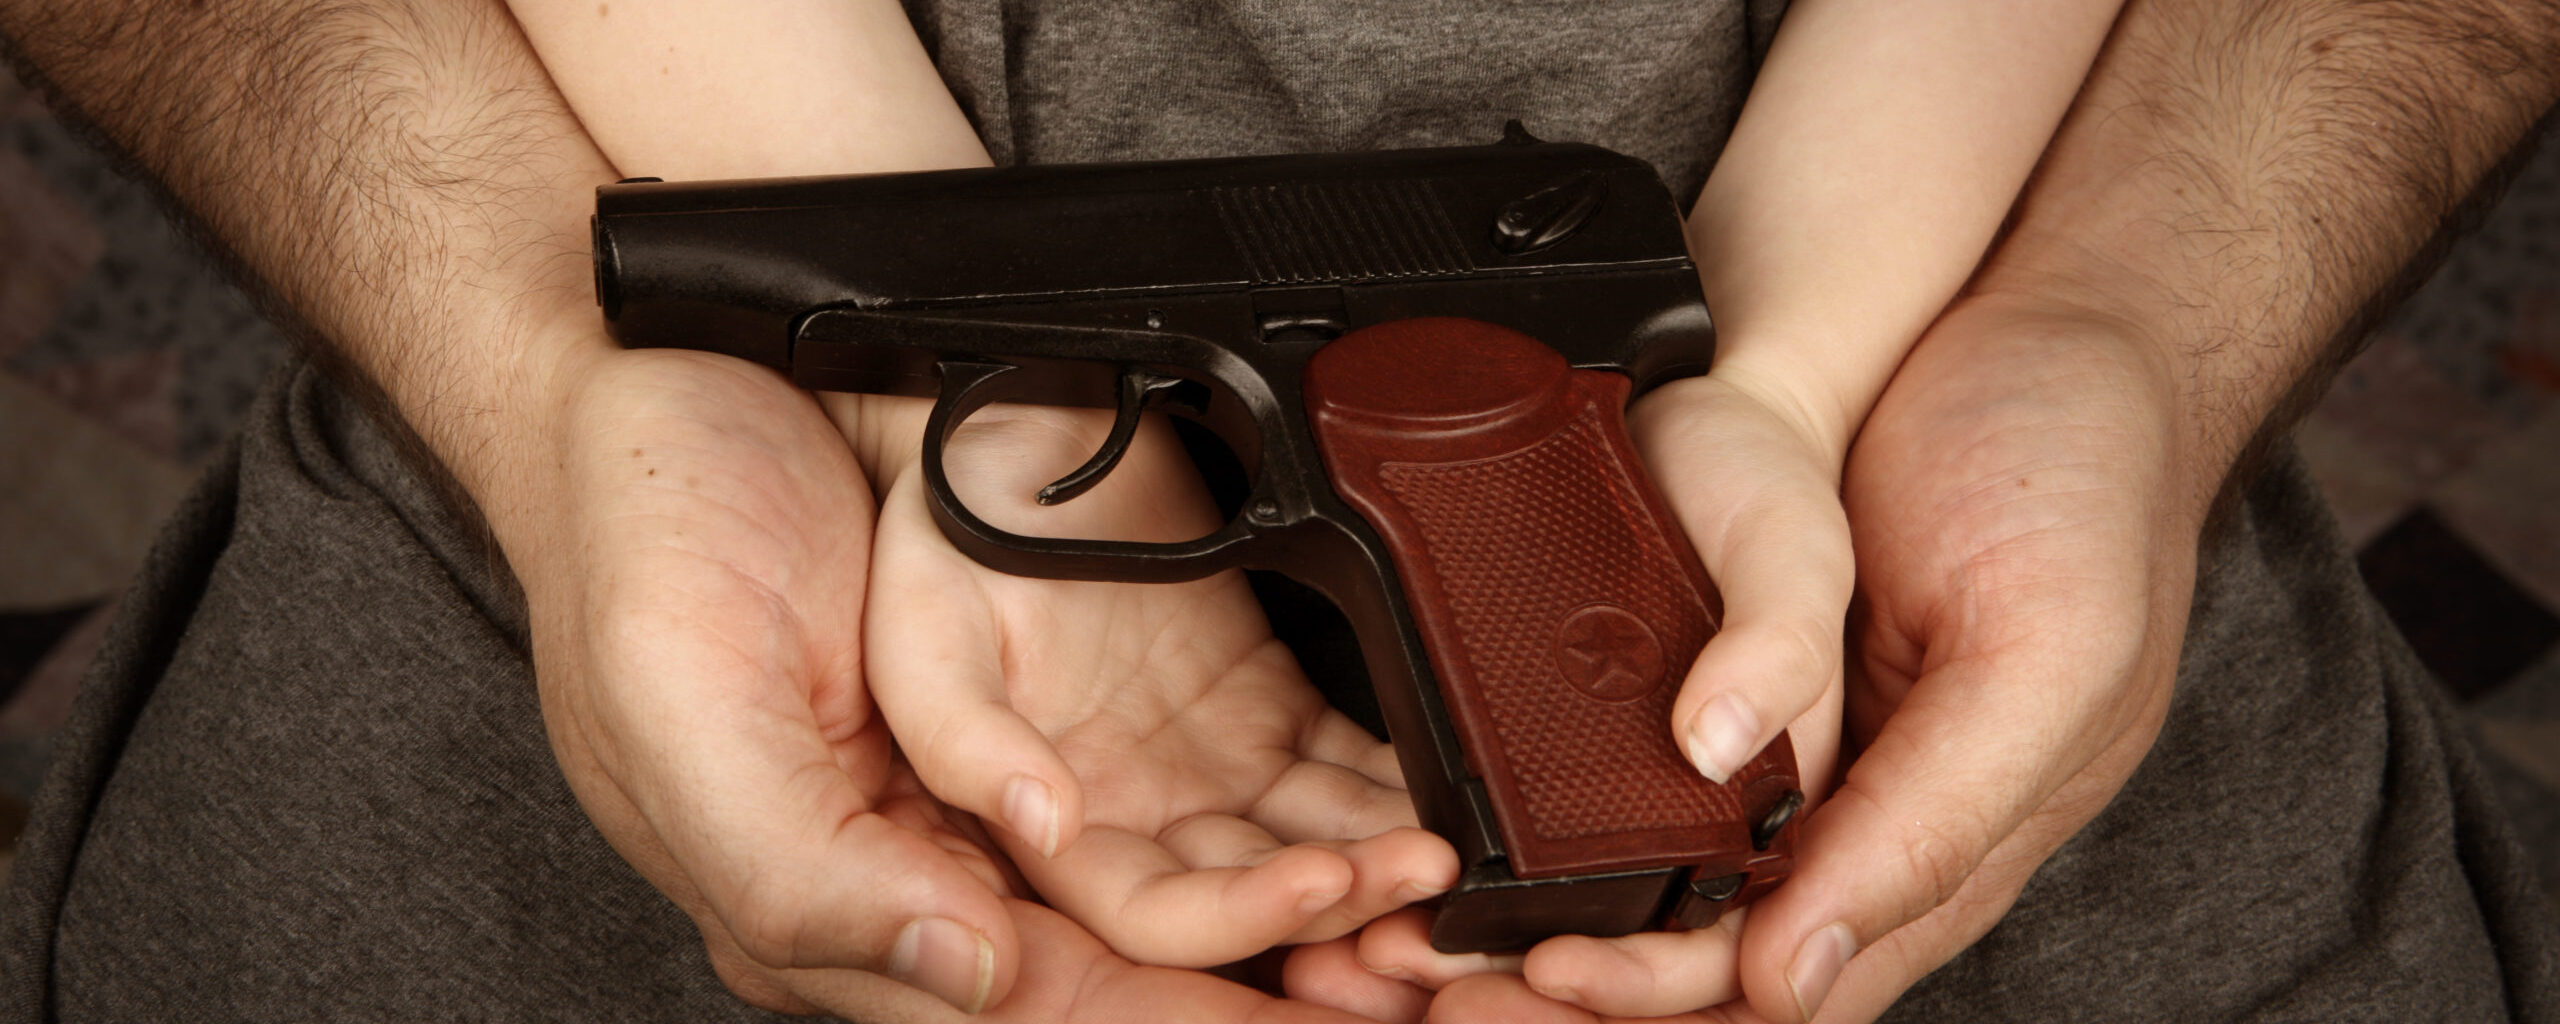 Gun Safety and Your Children